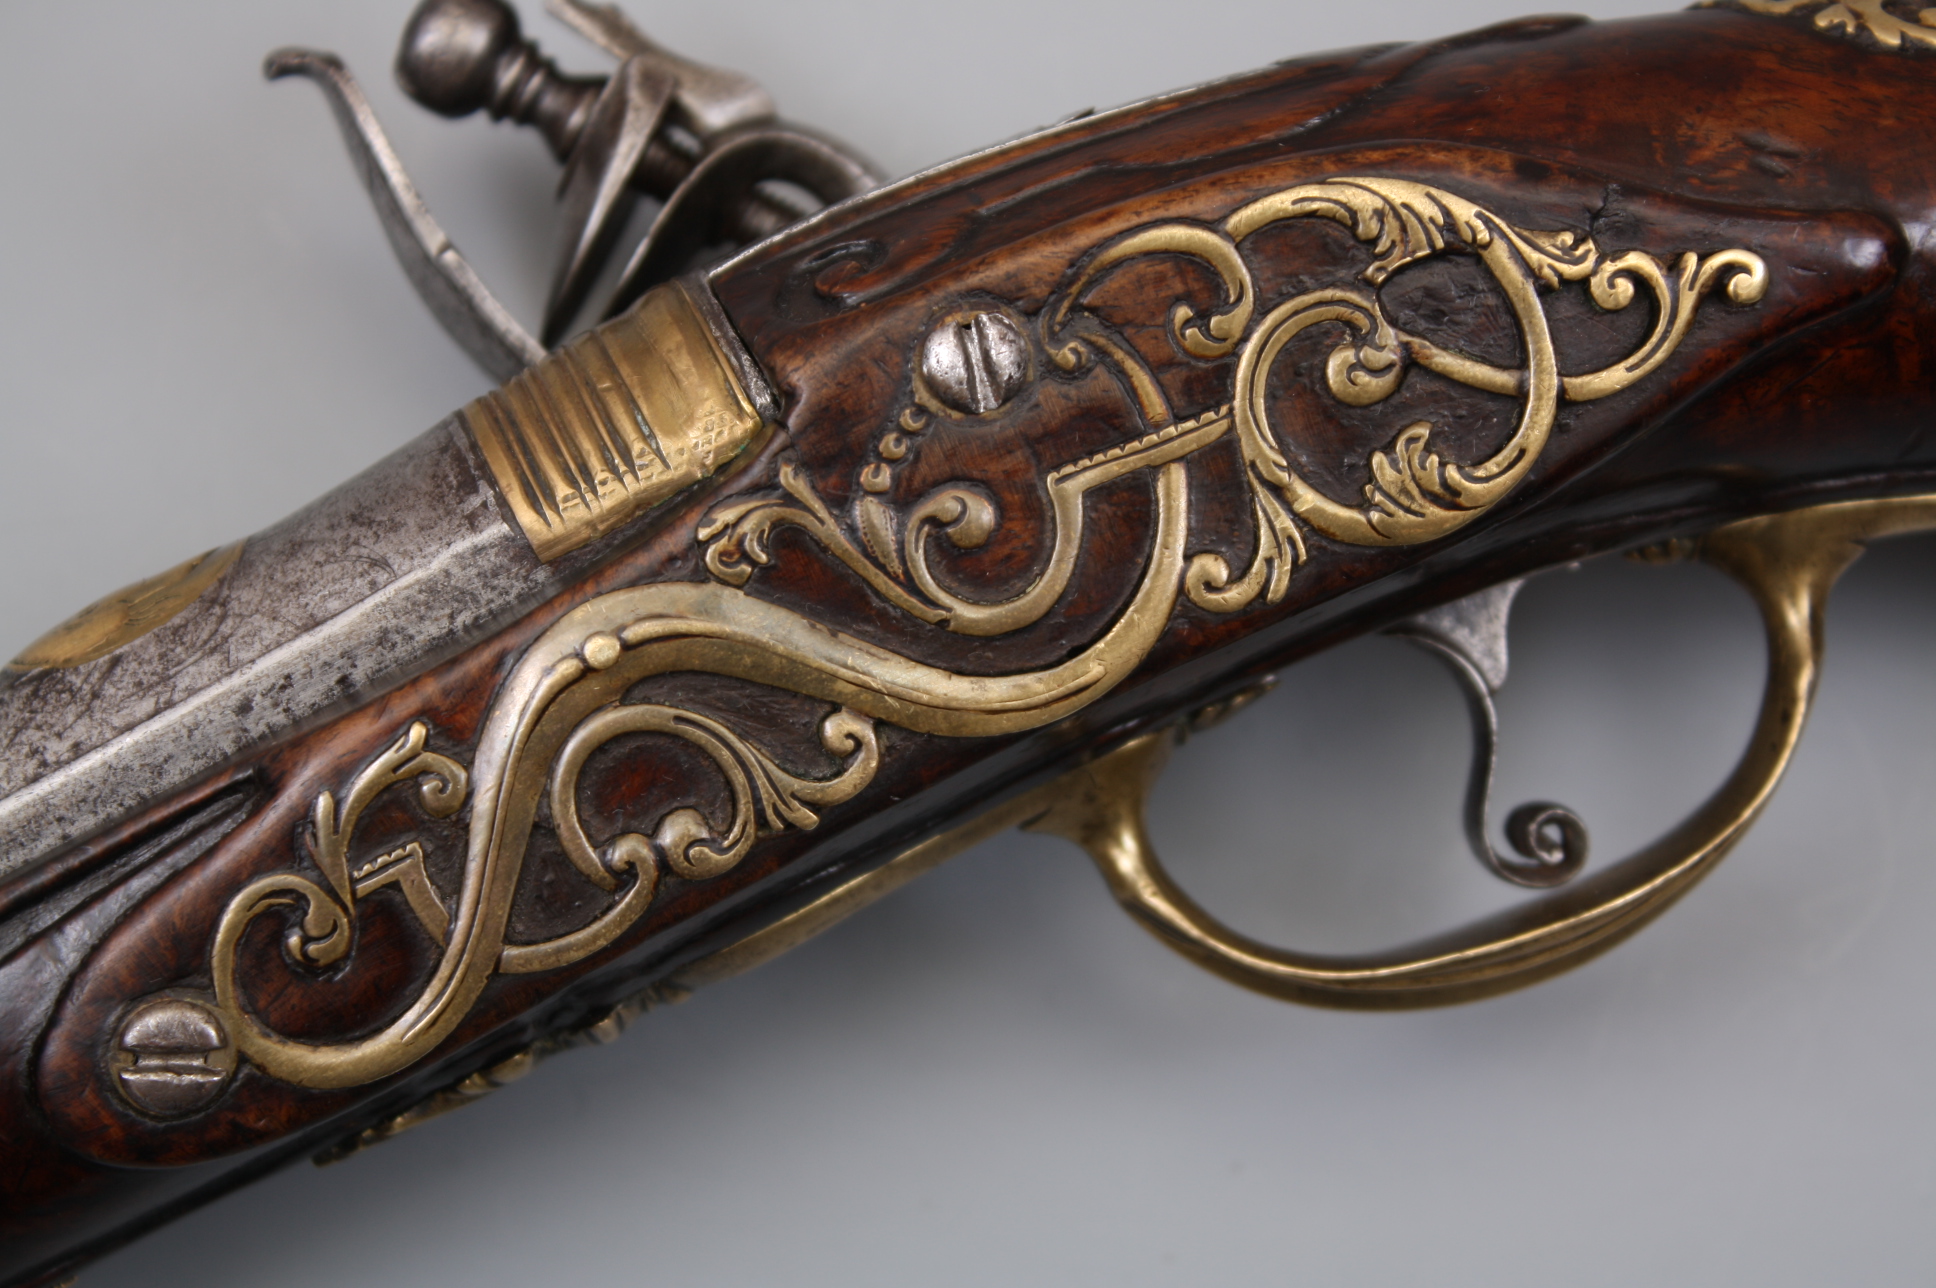 Пистолет системы Флинтлок мастер D.ZANONI 18 век, Северная Италия.